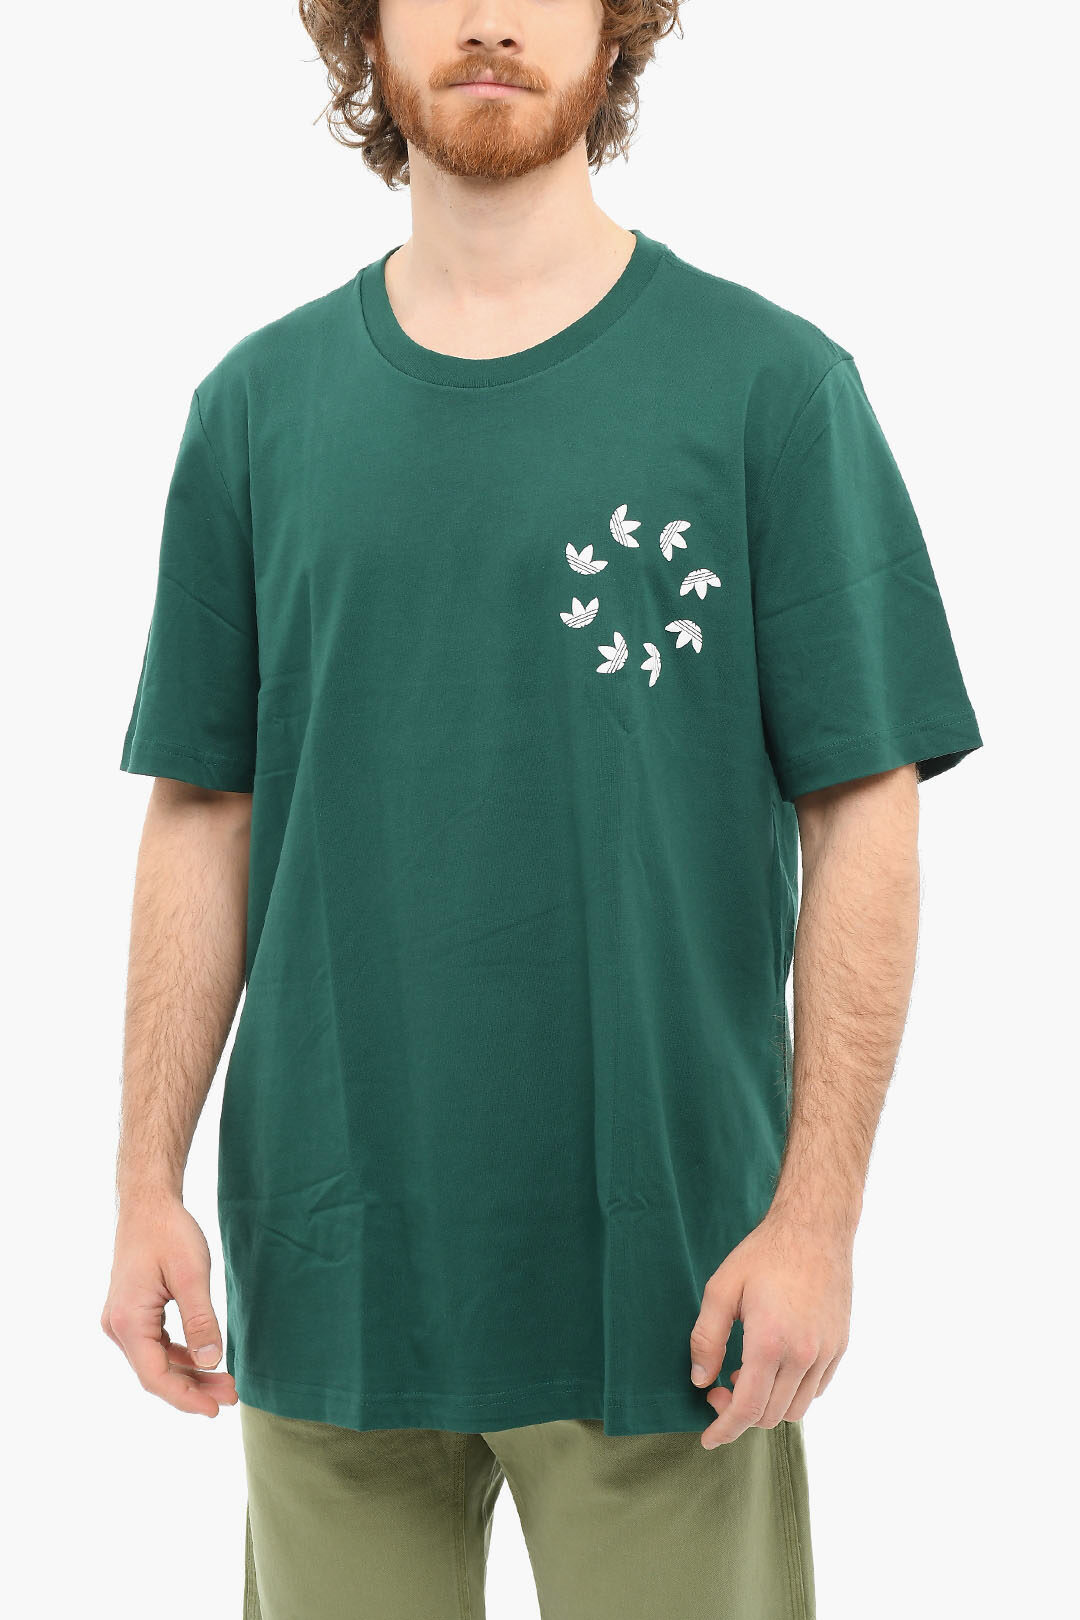 Eso Ordenado dólar estadounidense Adidas Logo print Short Sleeved BLD Crewneck T-shirt men - Glamood Outlet